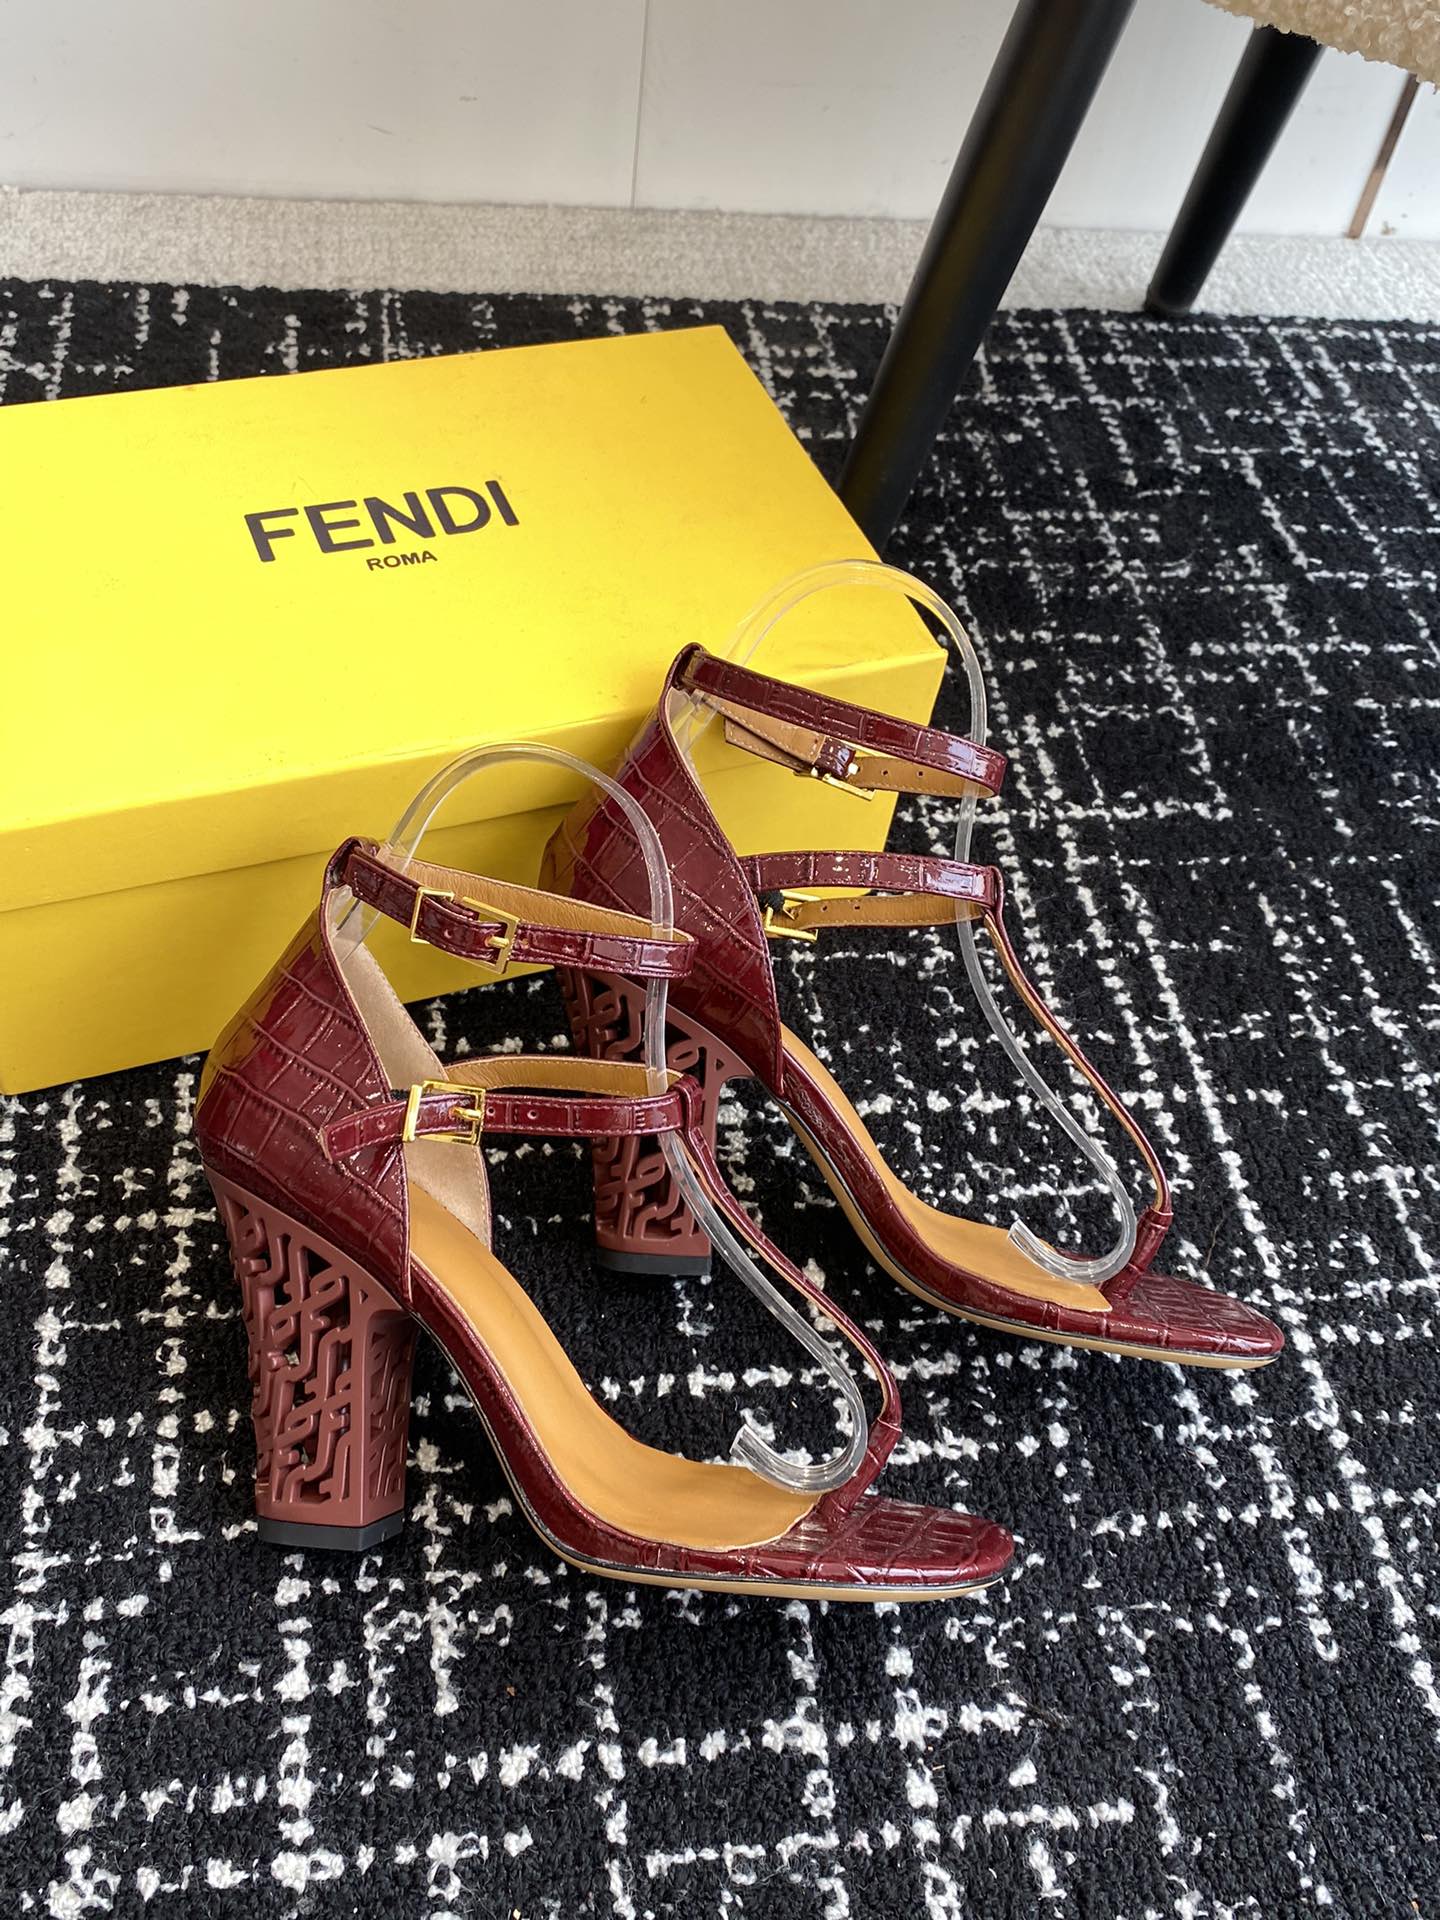 Fendi24ss走秀主推系列新品上线芬迪家具桌脚设计灵感改创于今年秀场的主推系列鞋履当季新品众所周知f